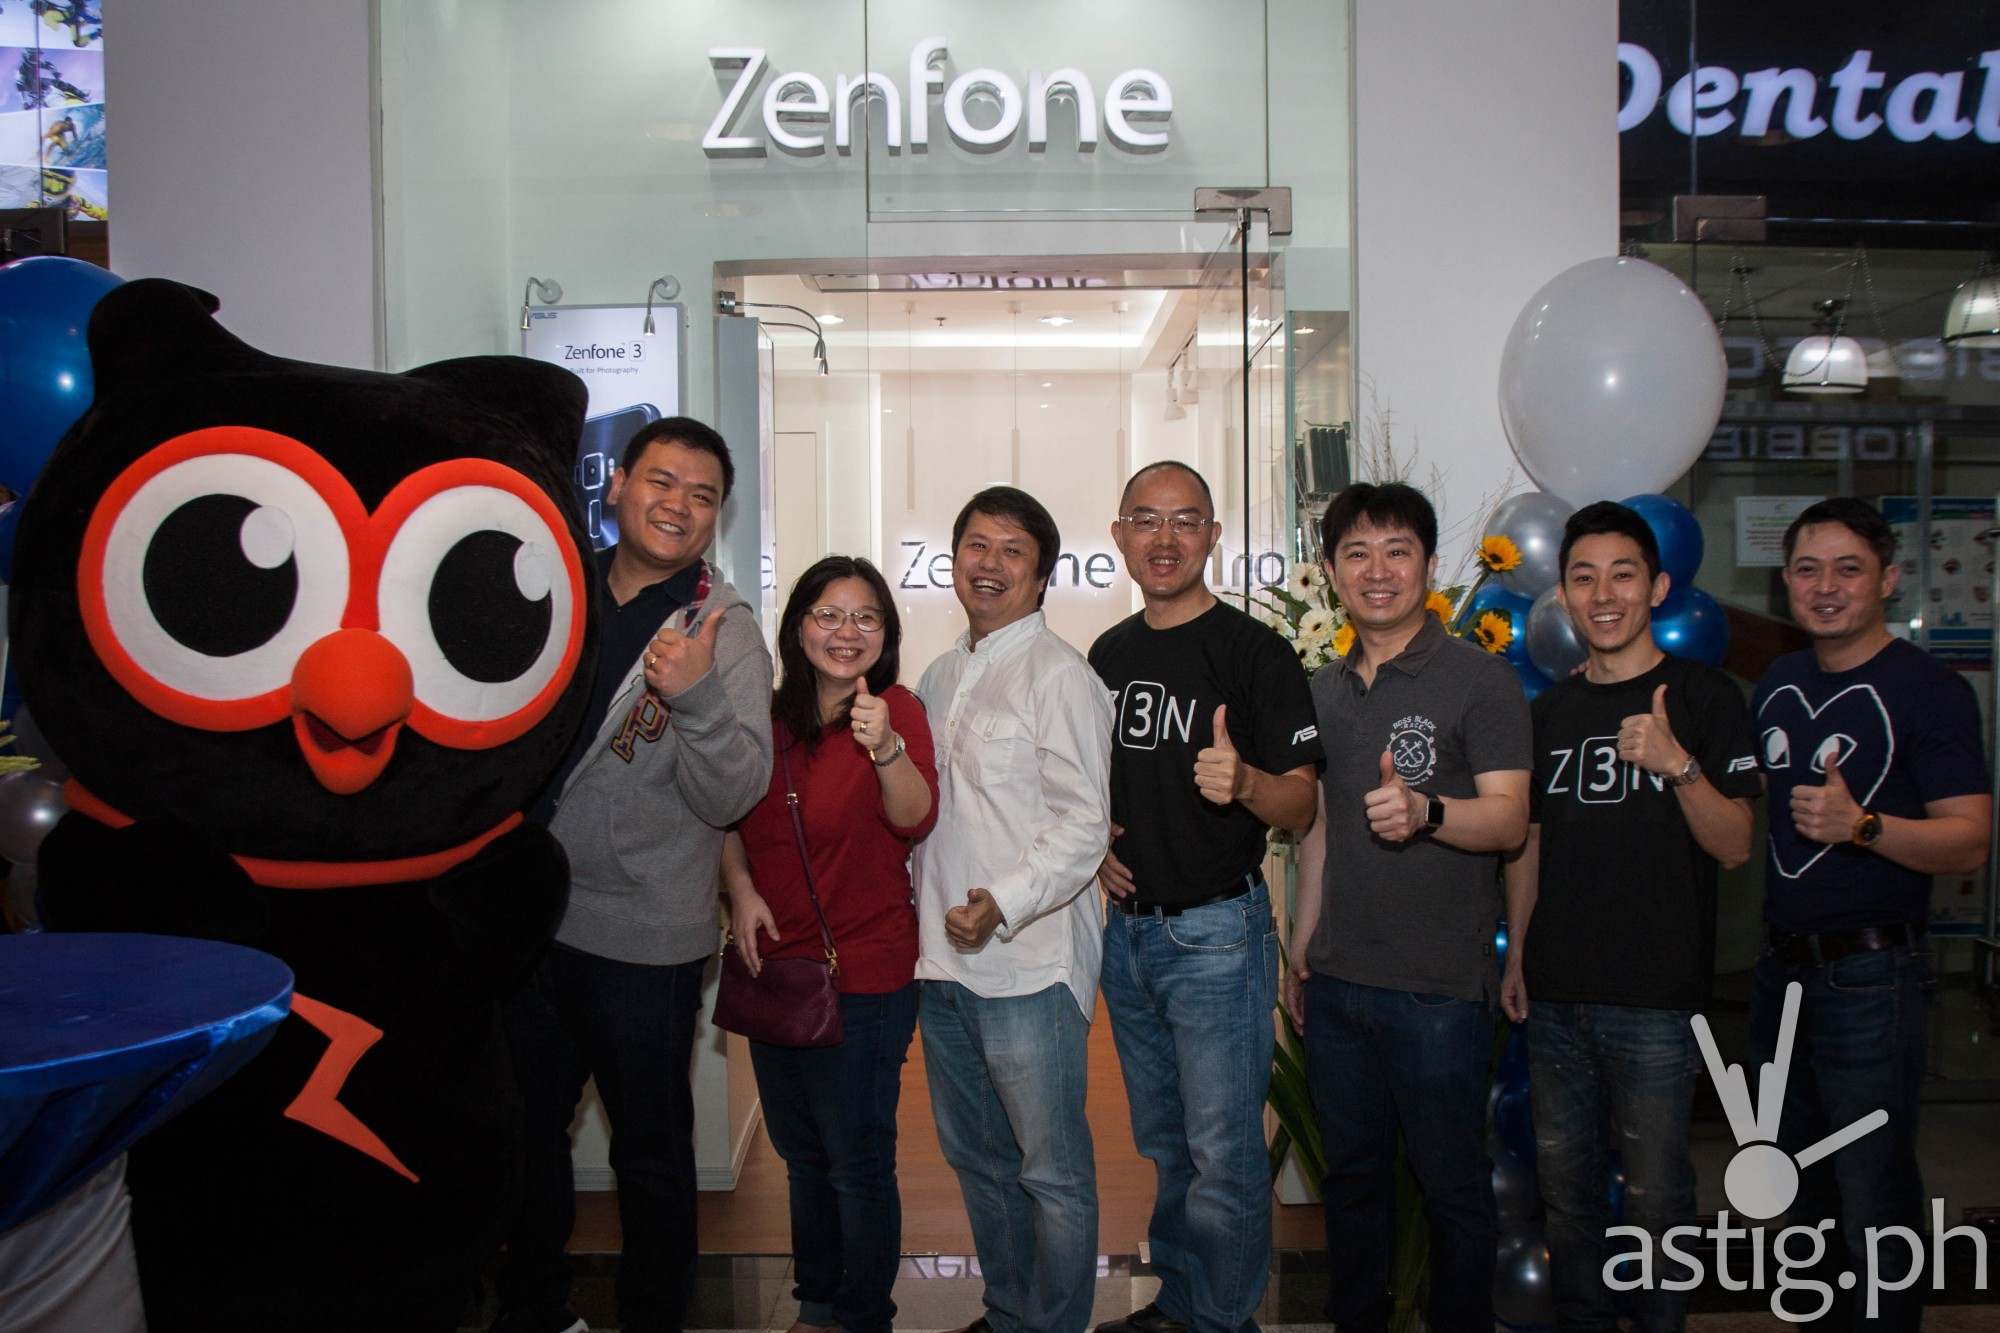 Zenfone 3 Concept Store Opens in Glorieta